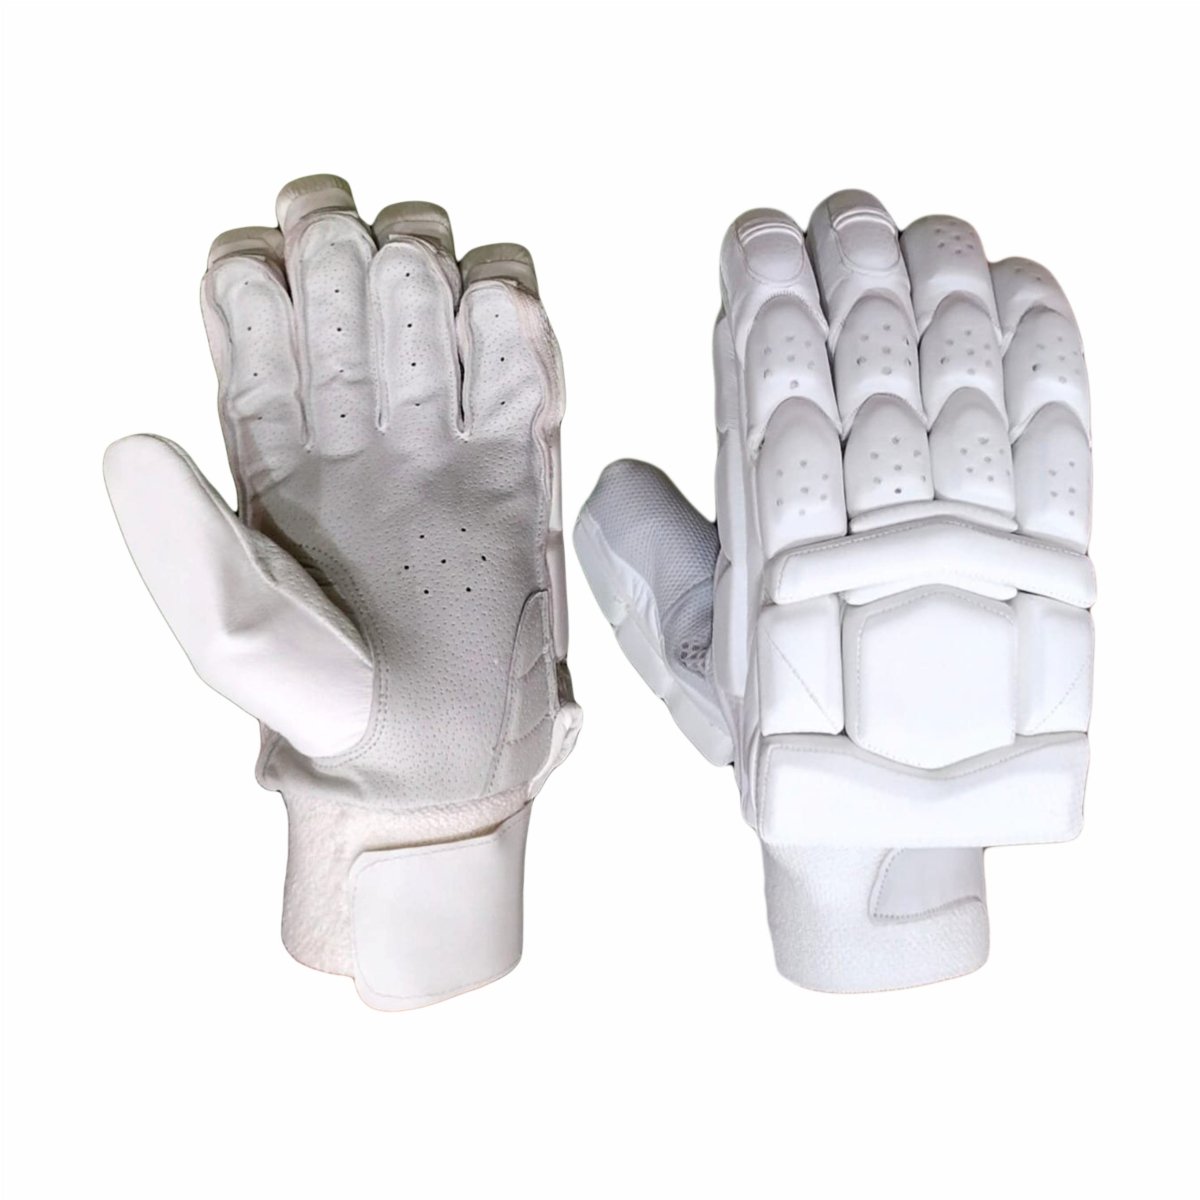 BL 09 Junior Cricket Batting Gloves Pittard Palm - Clean skin batting gloves